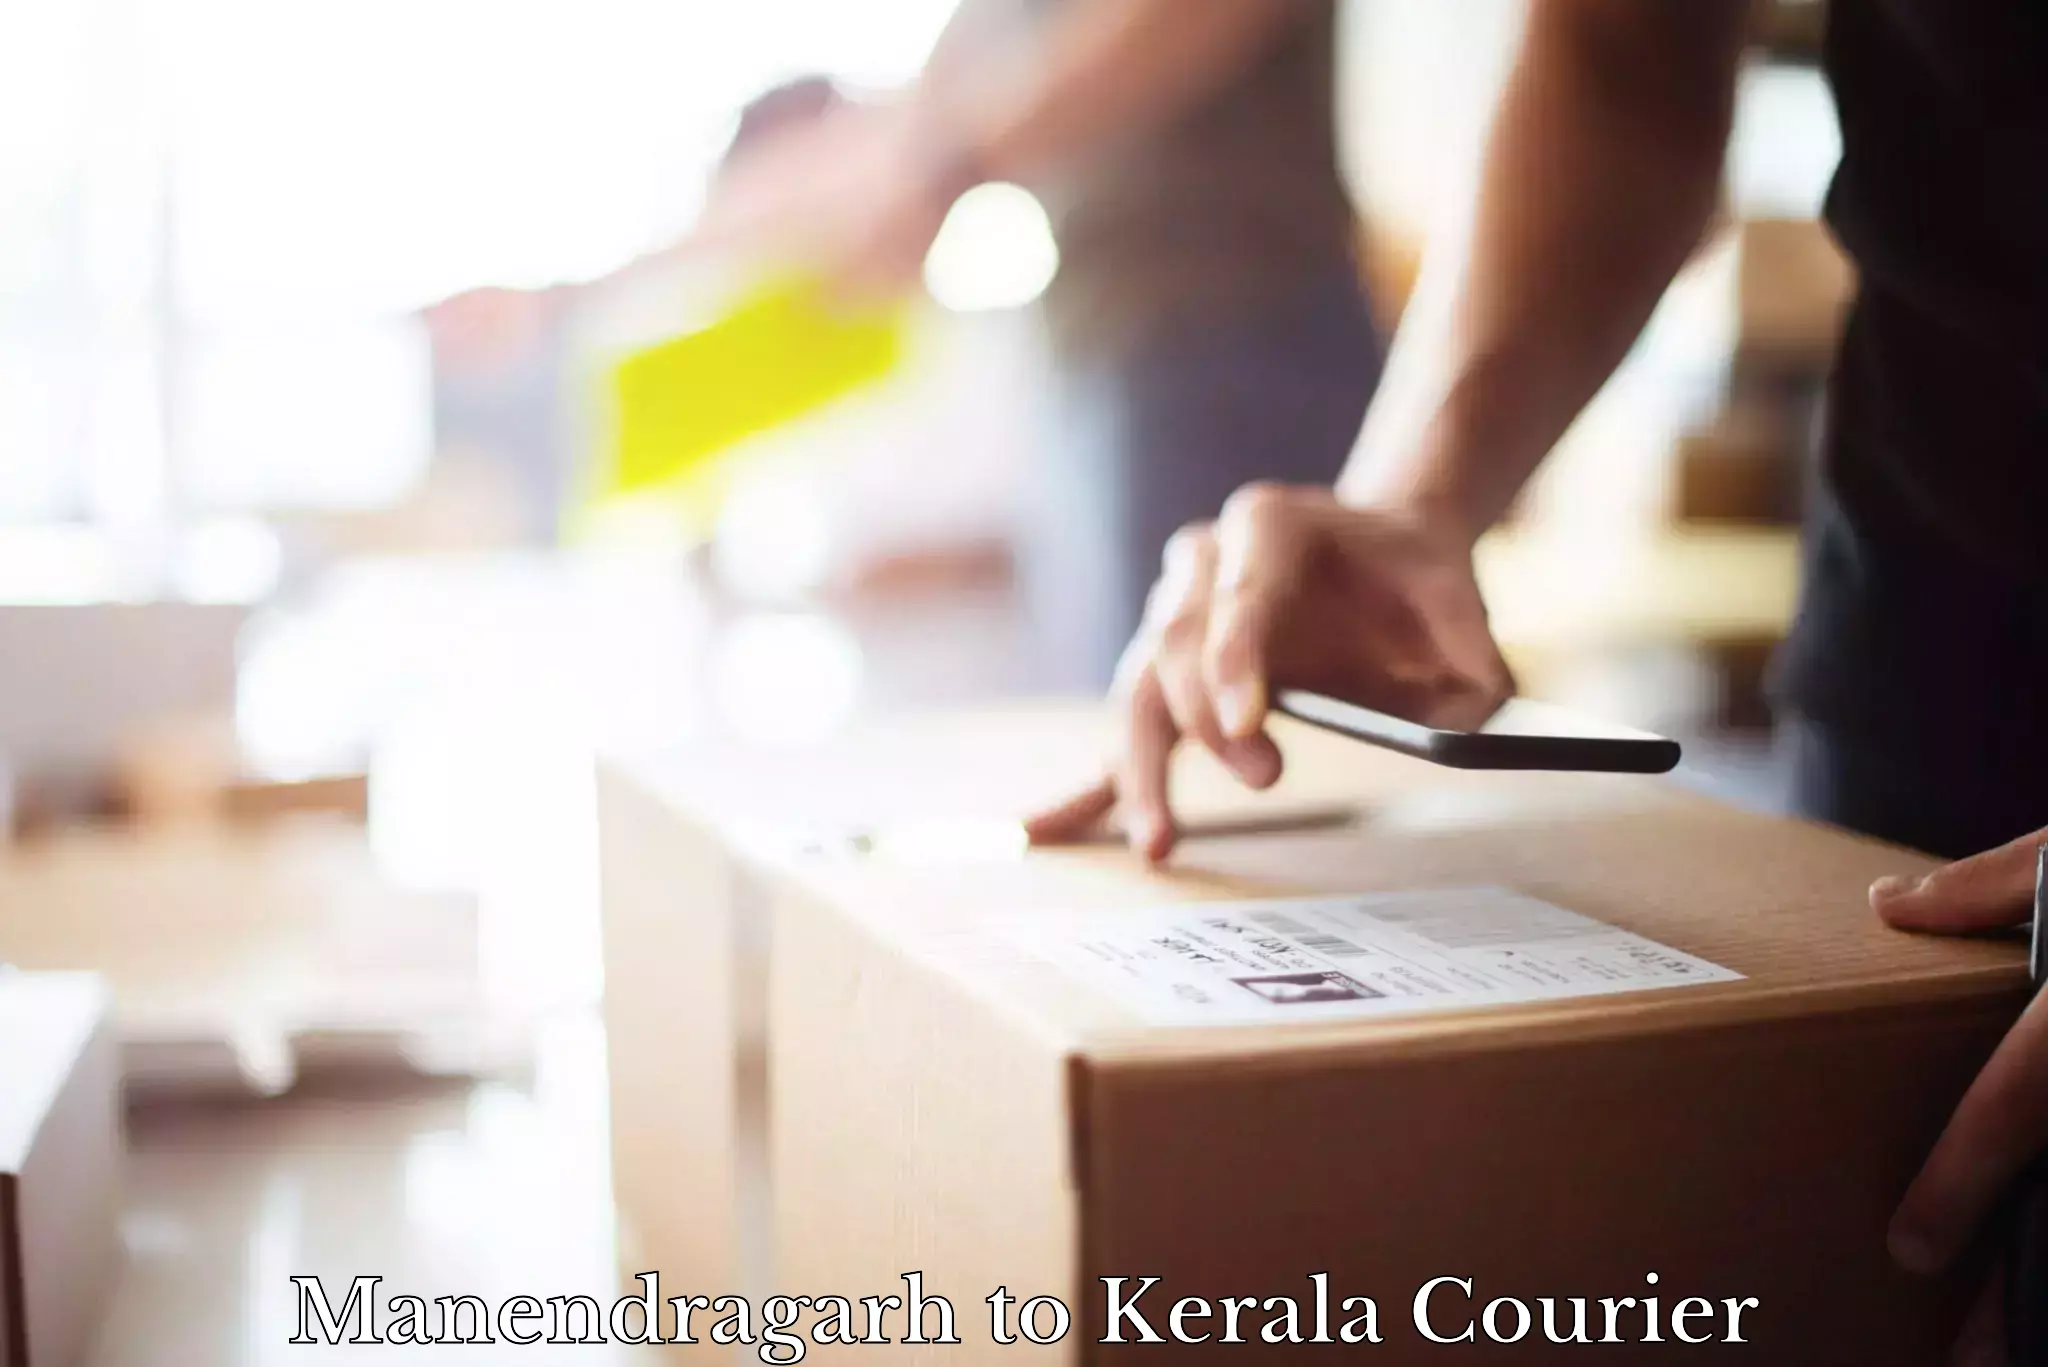 Courier service innovation Manendragarh to Kottarakkara